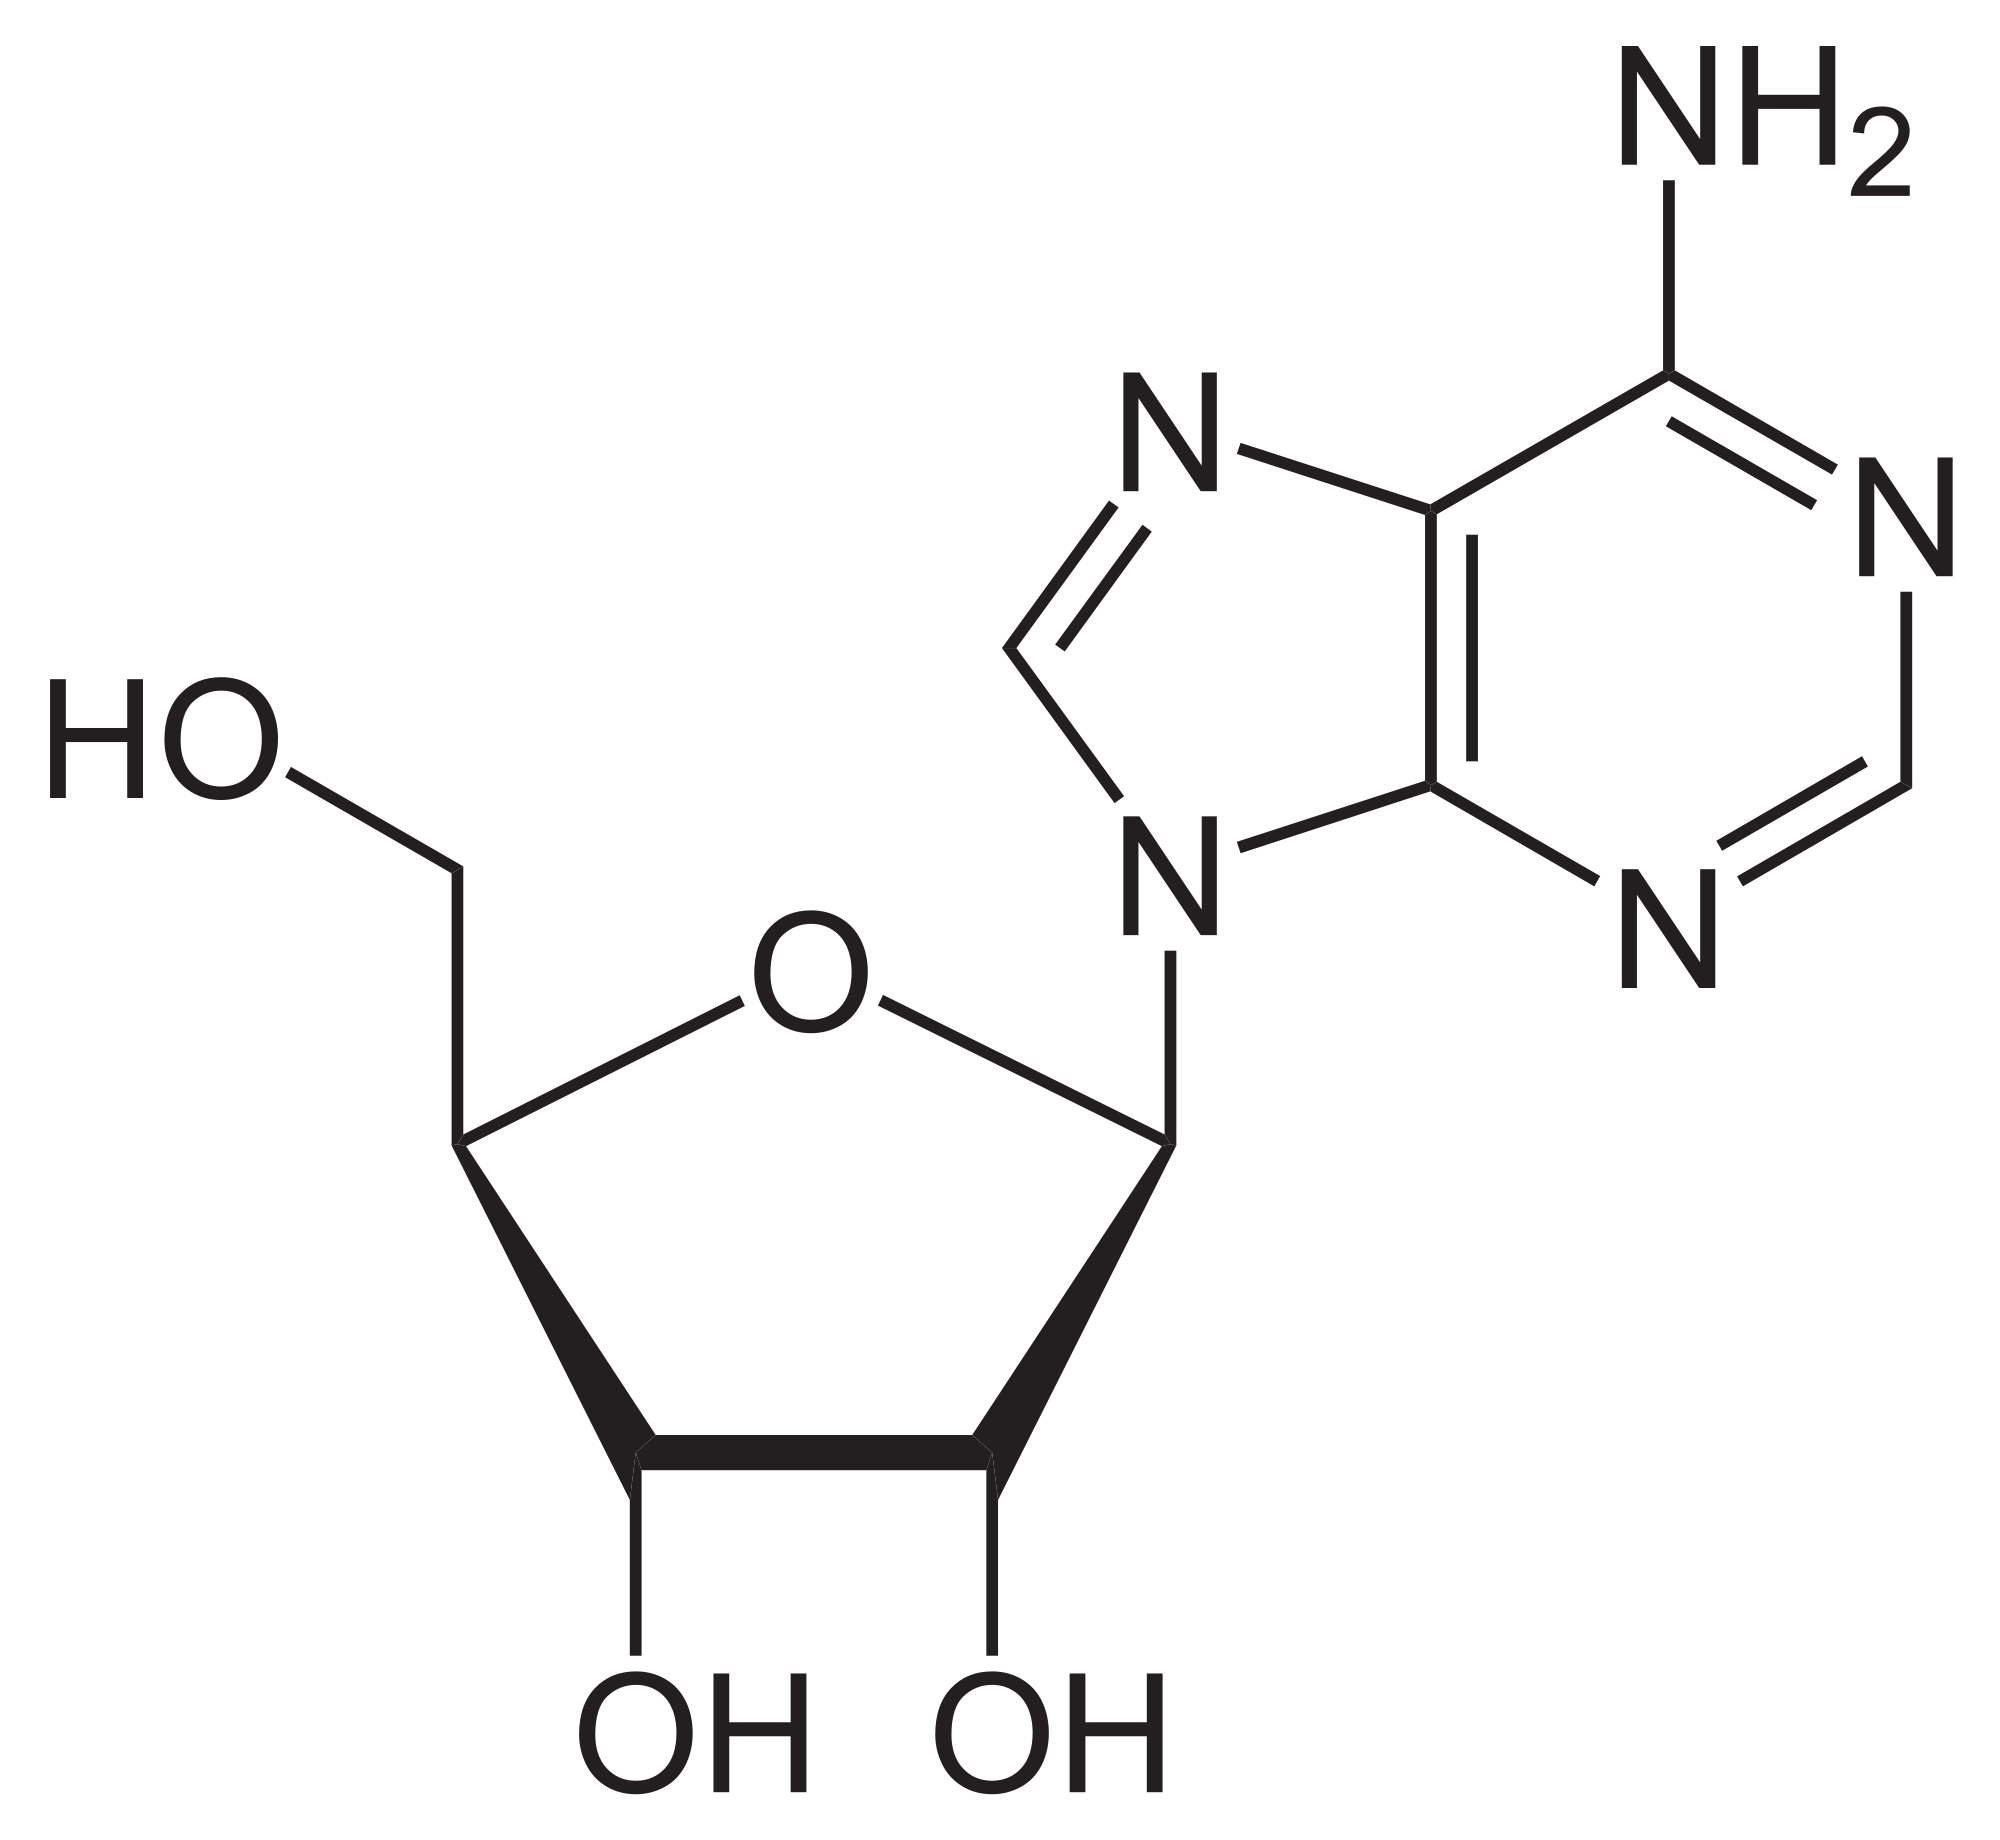 Adenosin